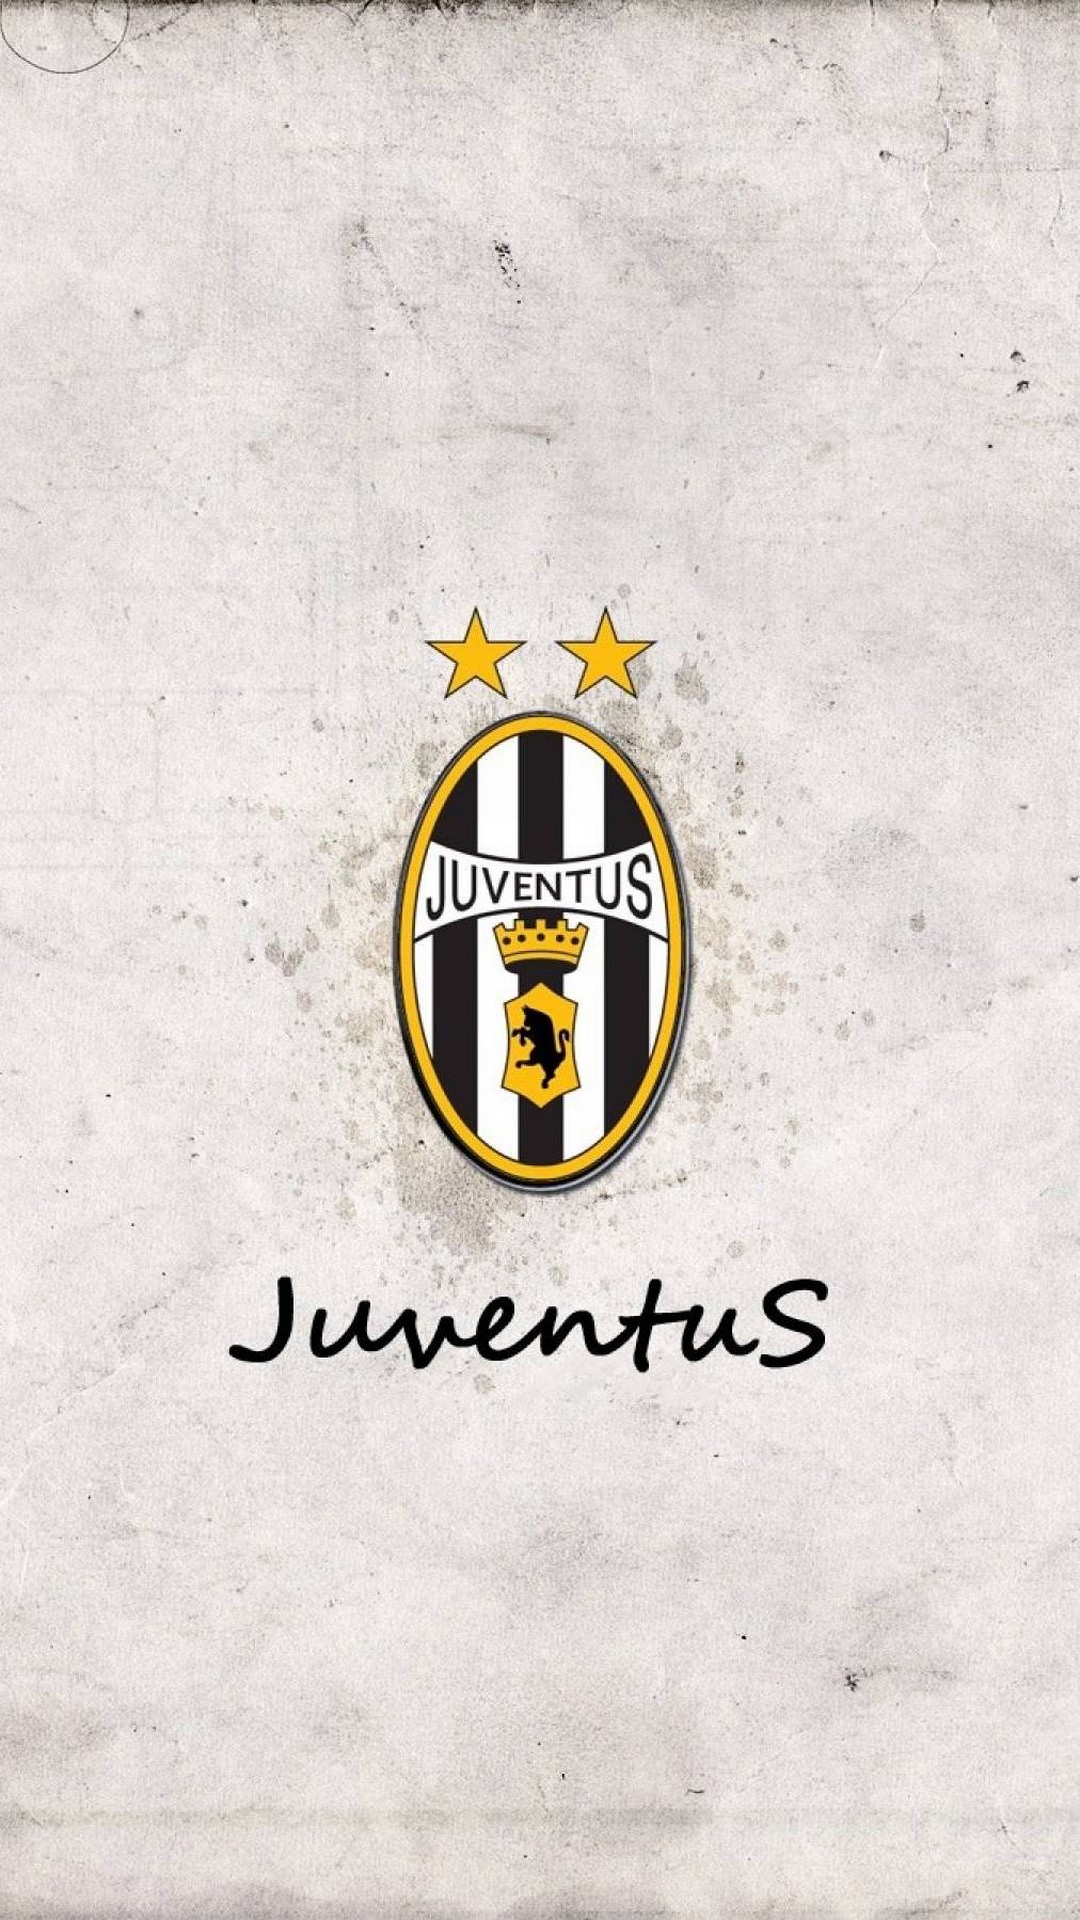 Juventus iPhone Wallpaper 1080p resolution 1080x1920